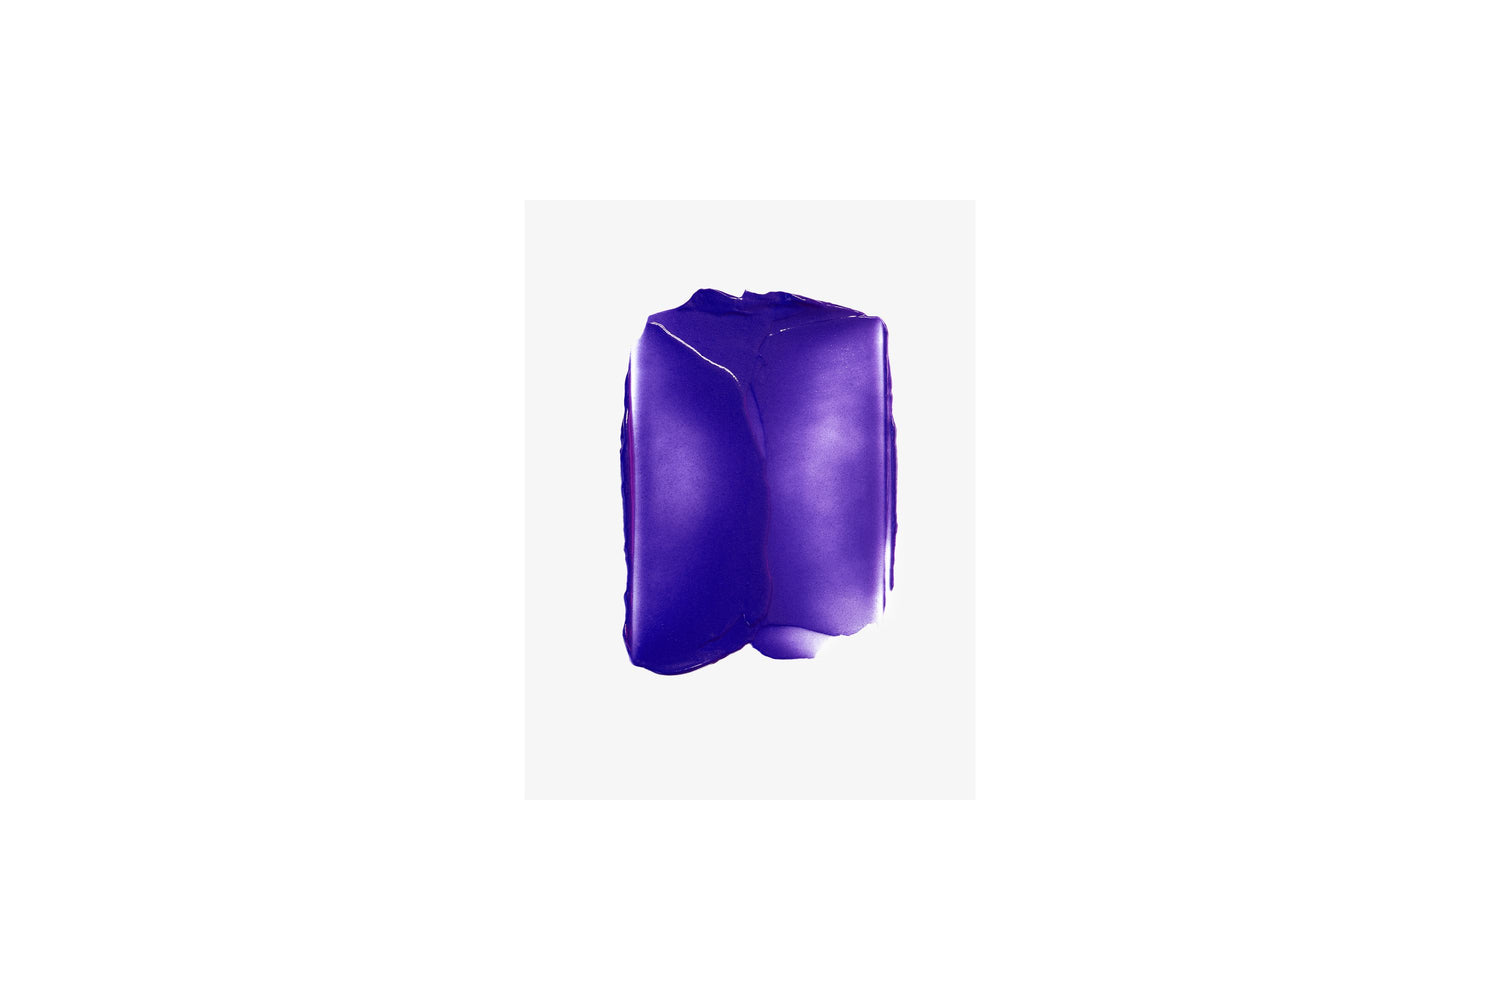 Kerastase Blond absolu masque ultra violet. Denna lila inpackning är idealisk för blont hår med kalla toner som är blekt eller slingat. Inpackningen tränger in i fibern och avlägsnar oönskade varma och gula toner.